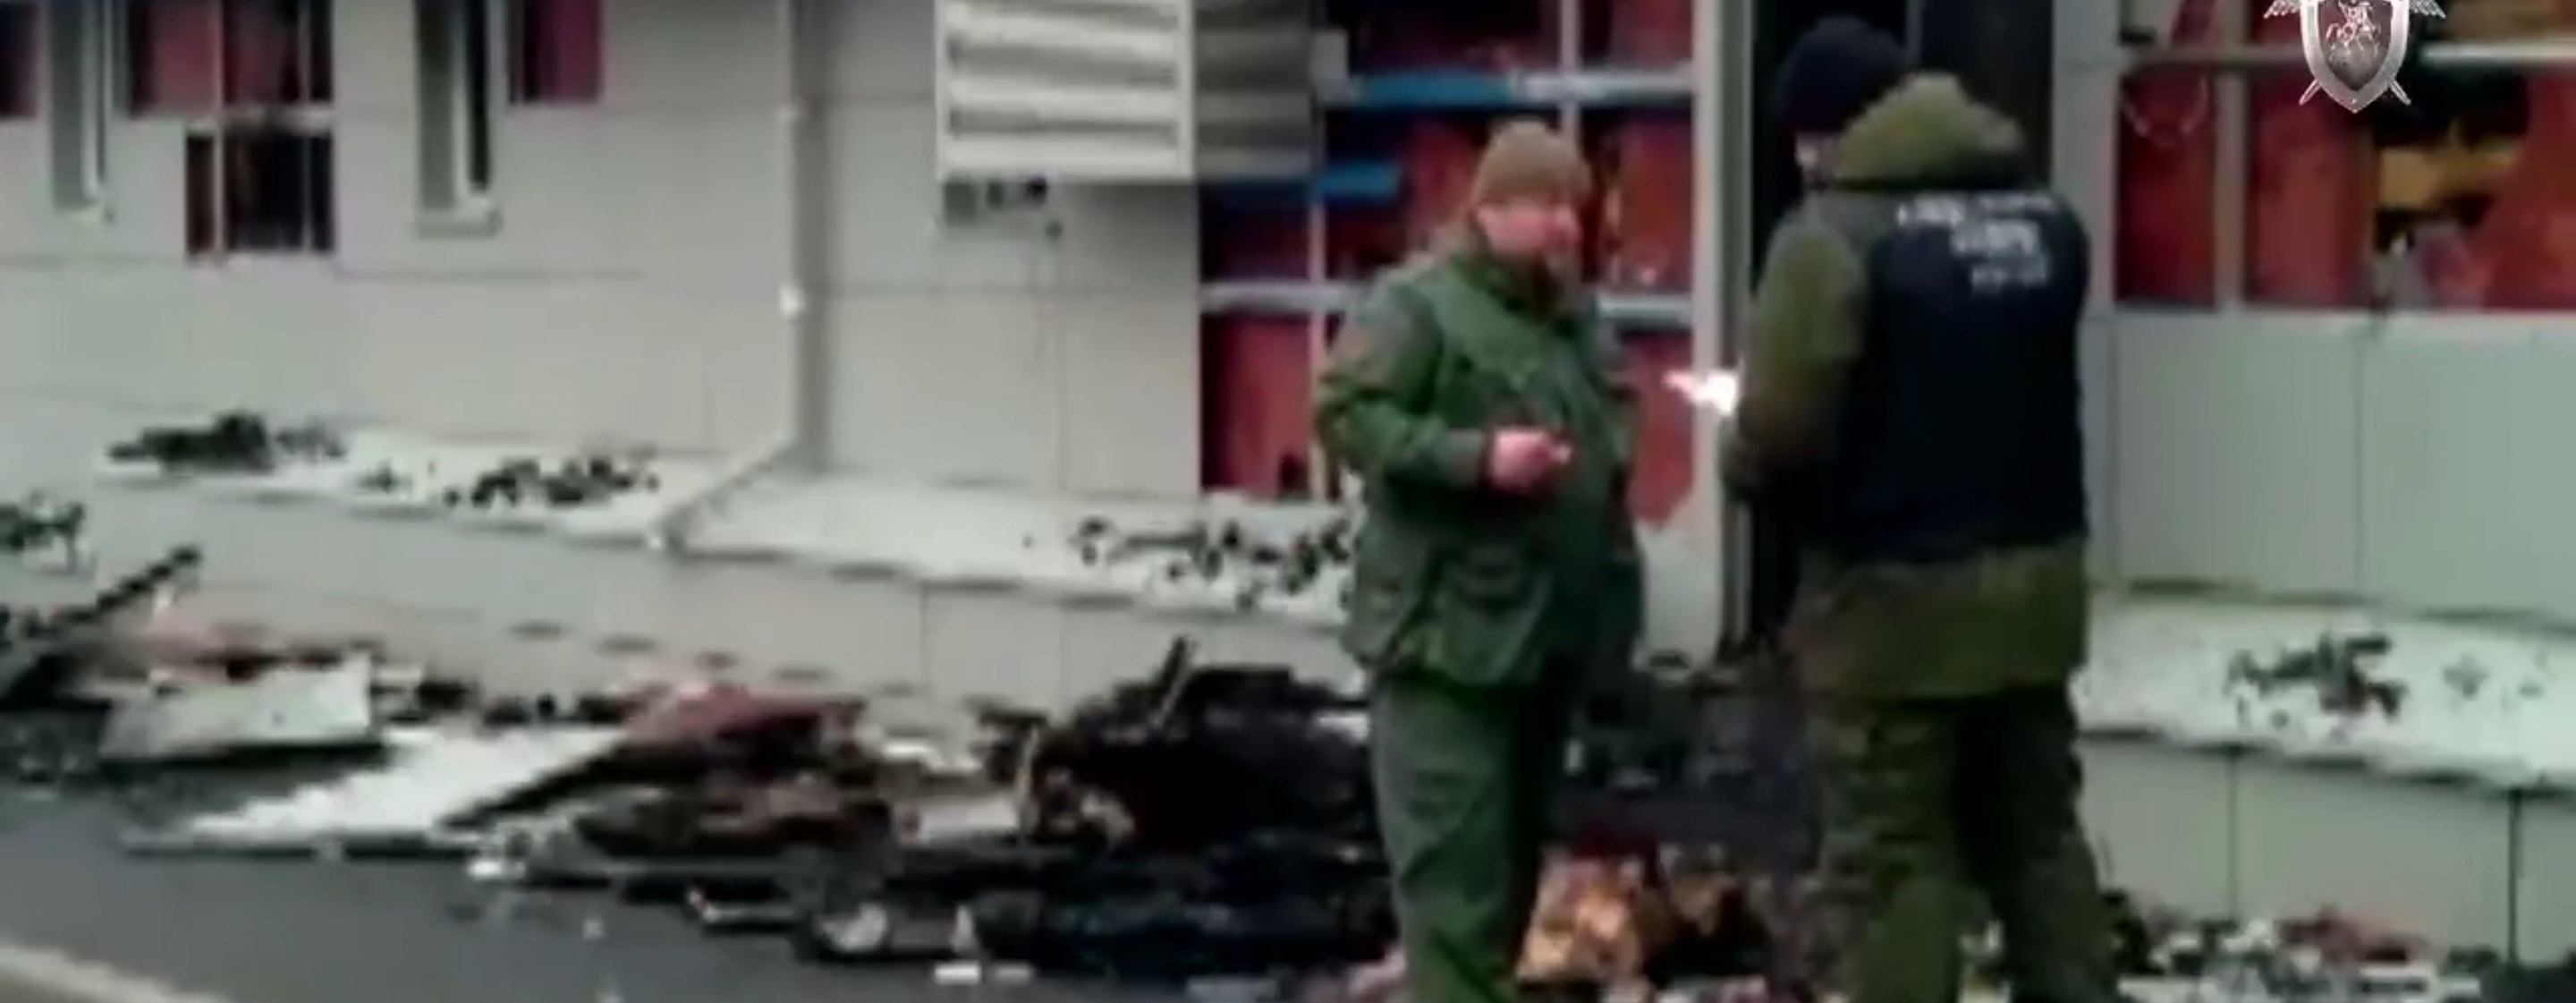 В Костромской области возбудили уголовное дело по факту пожара в кафе "Полигон"